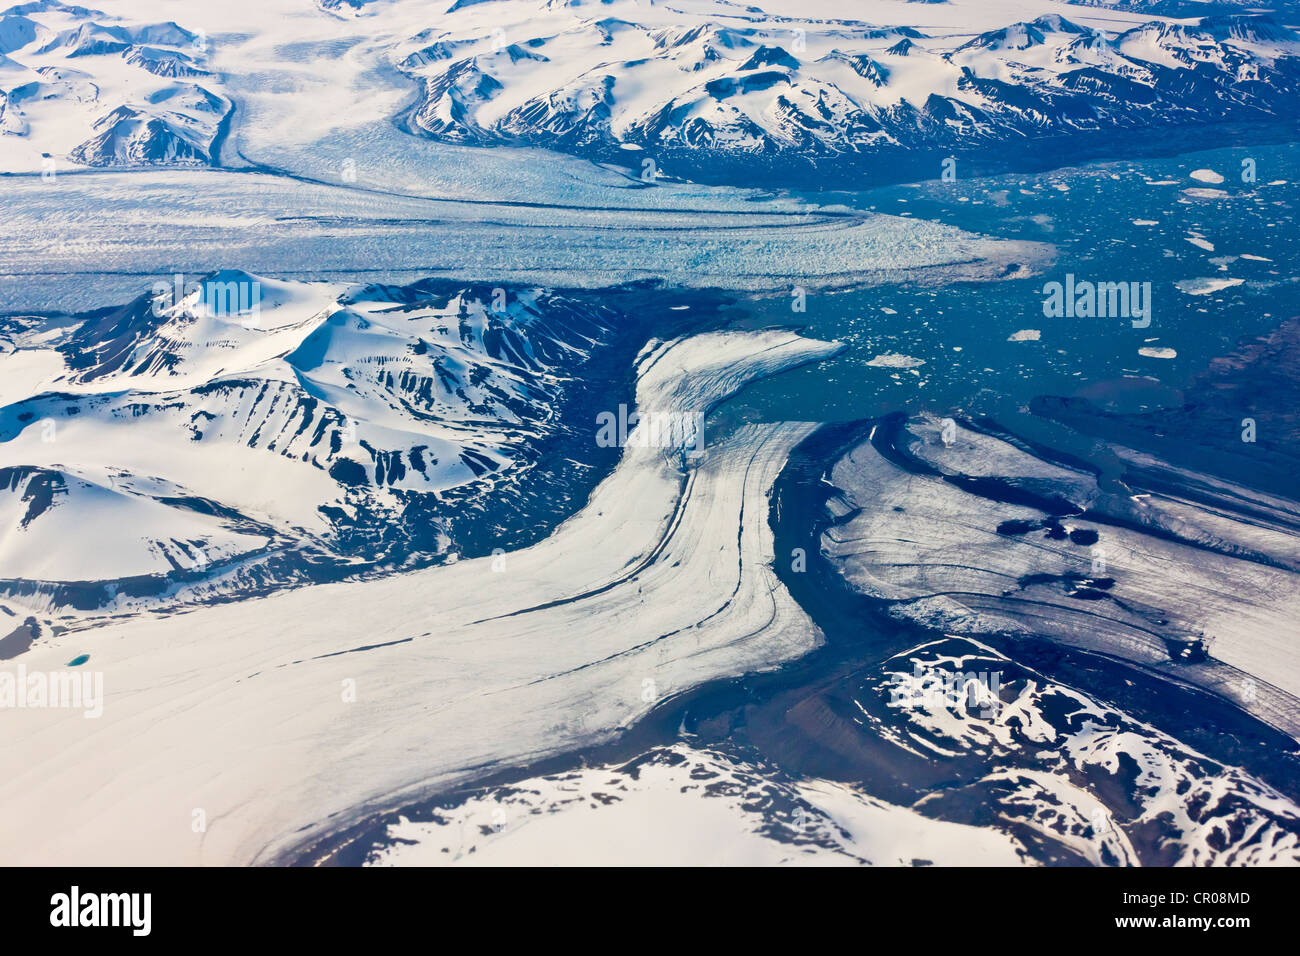 Vue aérienne de trois glaciers, Longyearbyen, Spitzberg, Norvège, de l'Arctique Banque D'Images